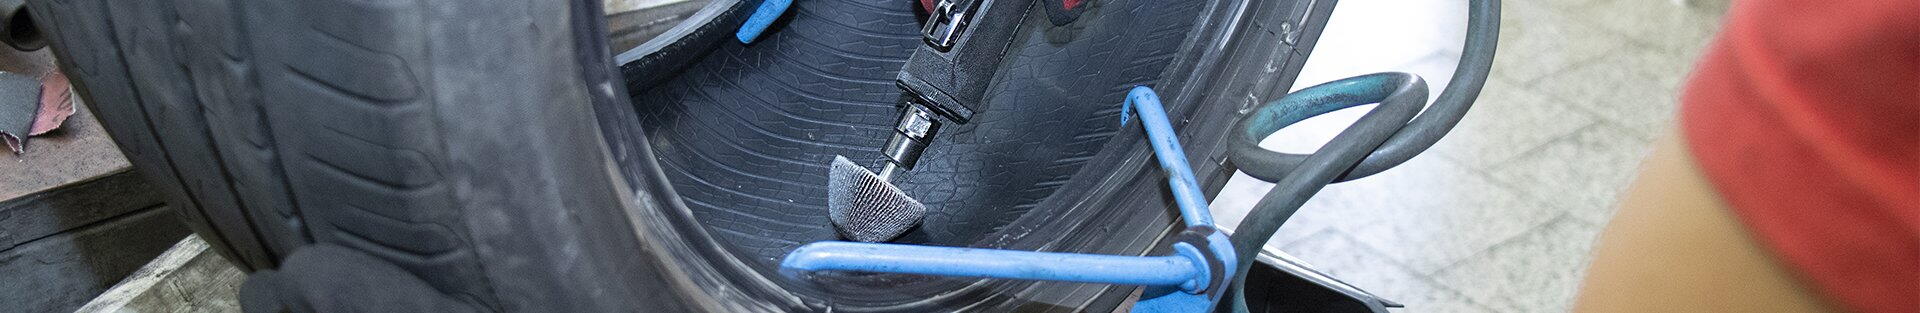 Opravy defektů pneumatik a hliníkových disků